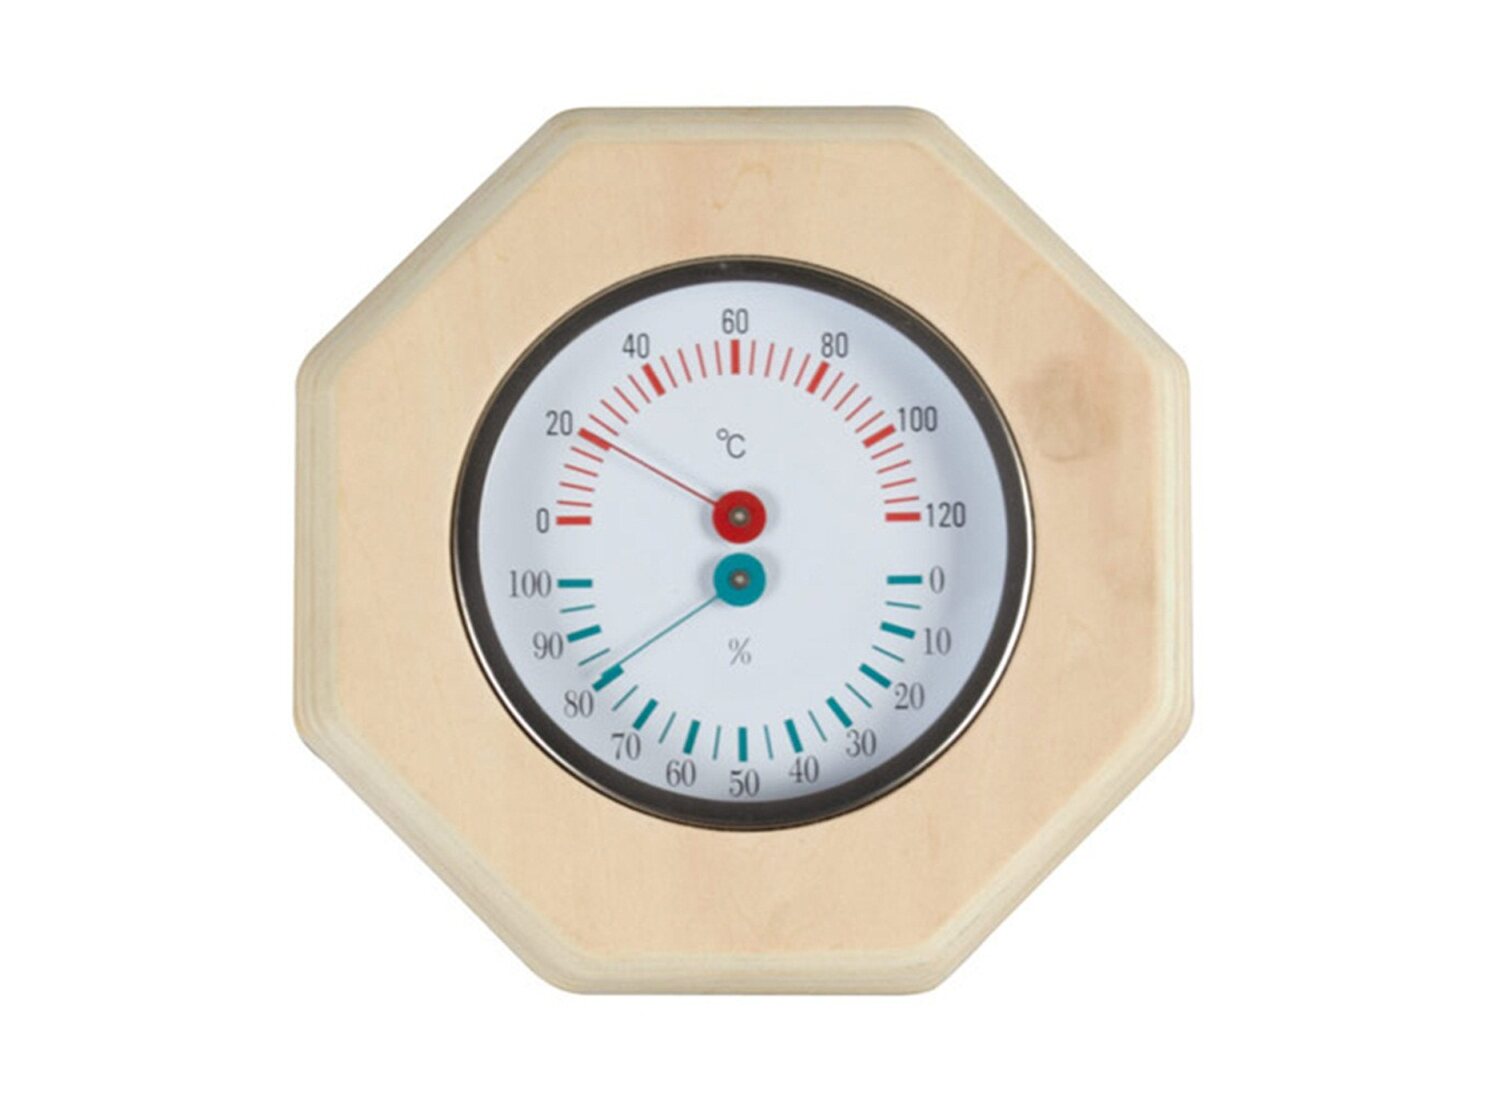 Thermo- und Hygrometer